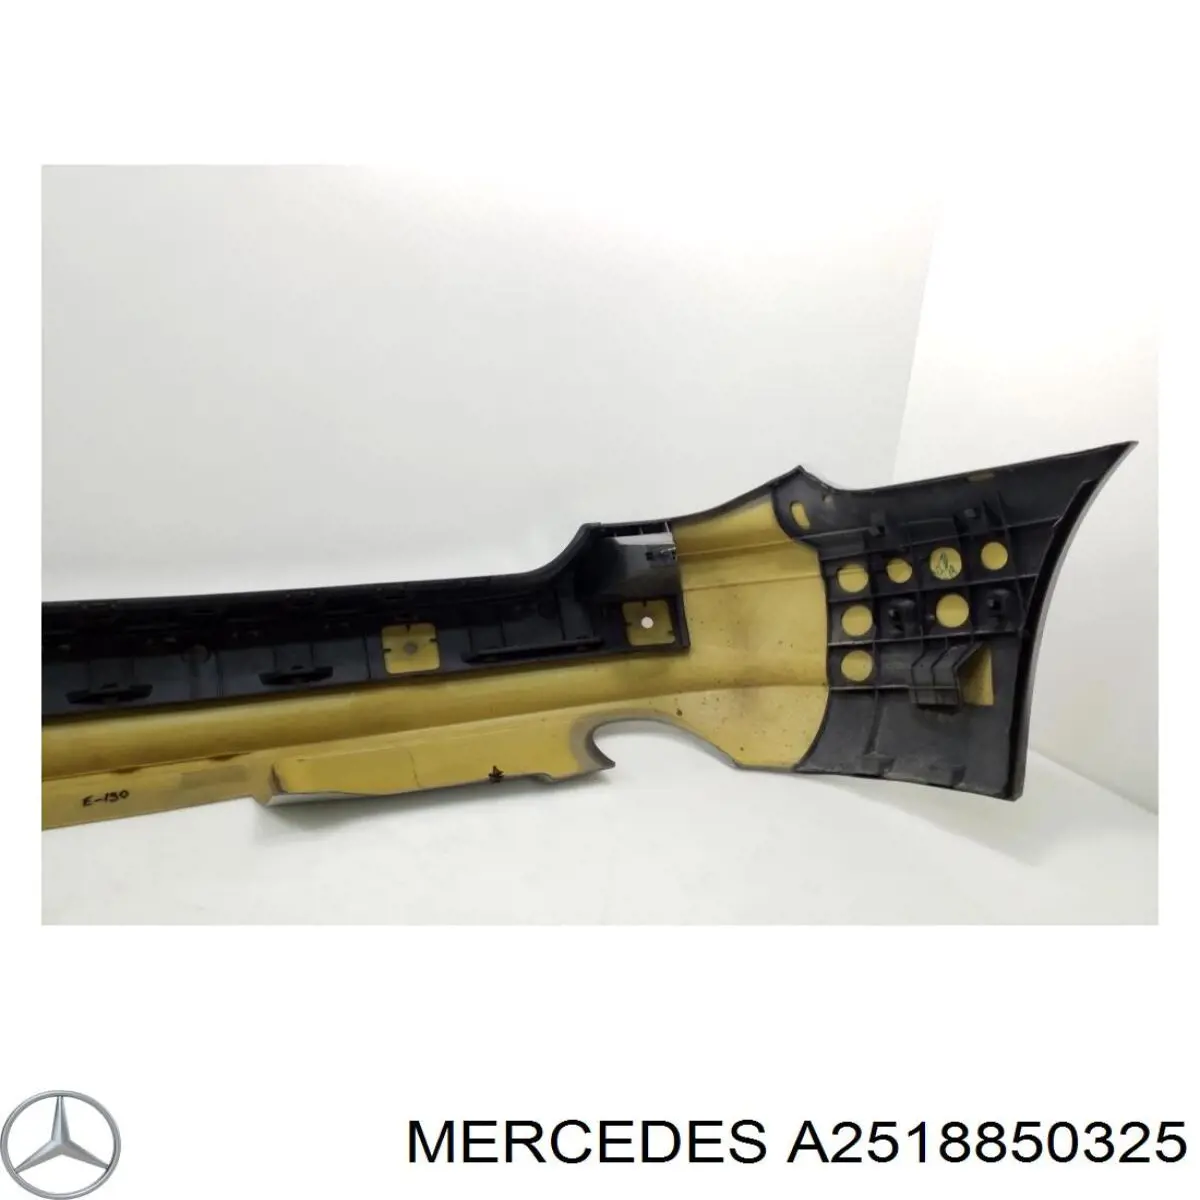 2518850325 Mercedes parachoques trasero